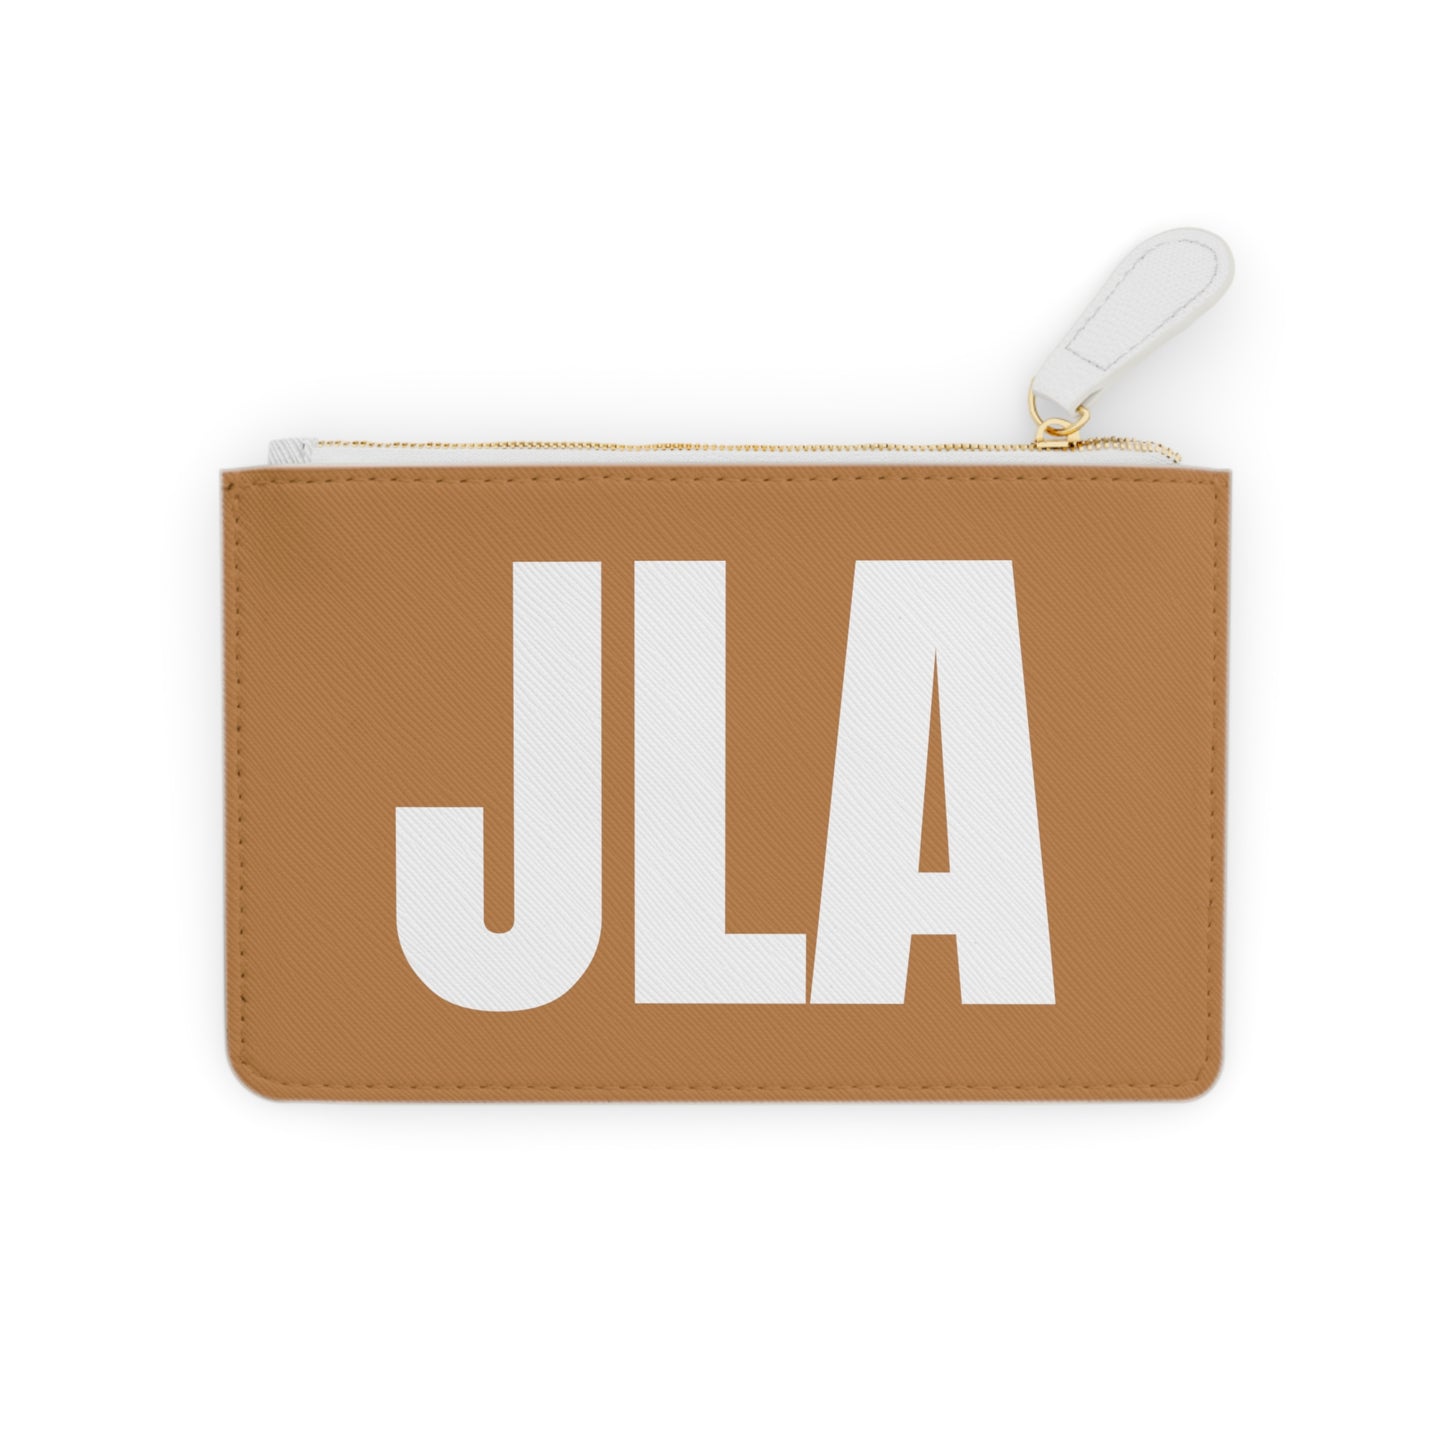 Jah’mi Luxe Mini “ Came in Clutch” Bag